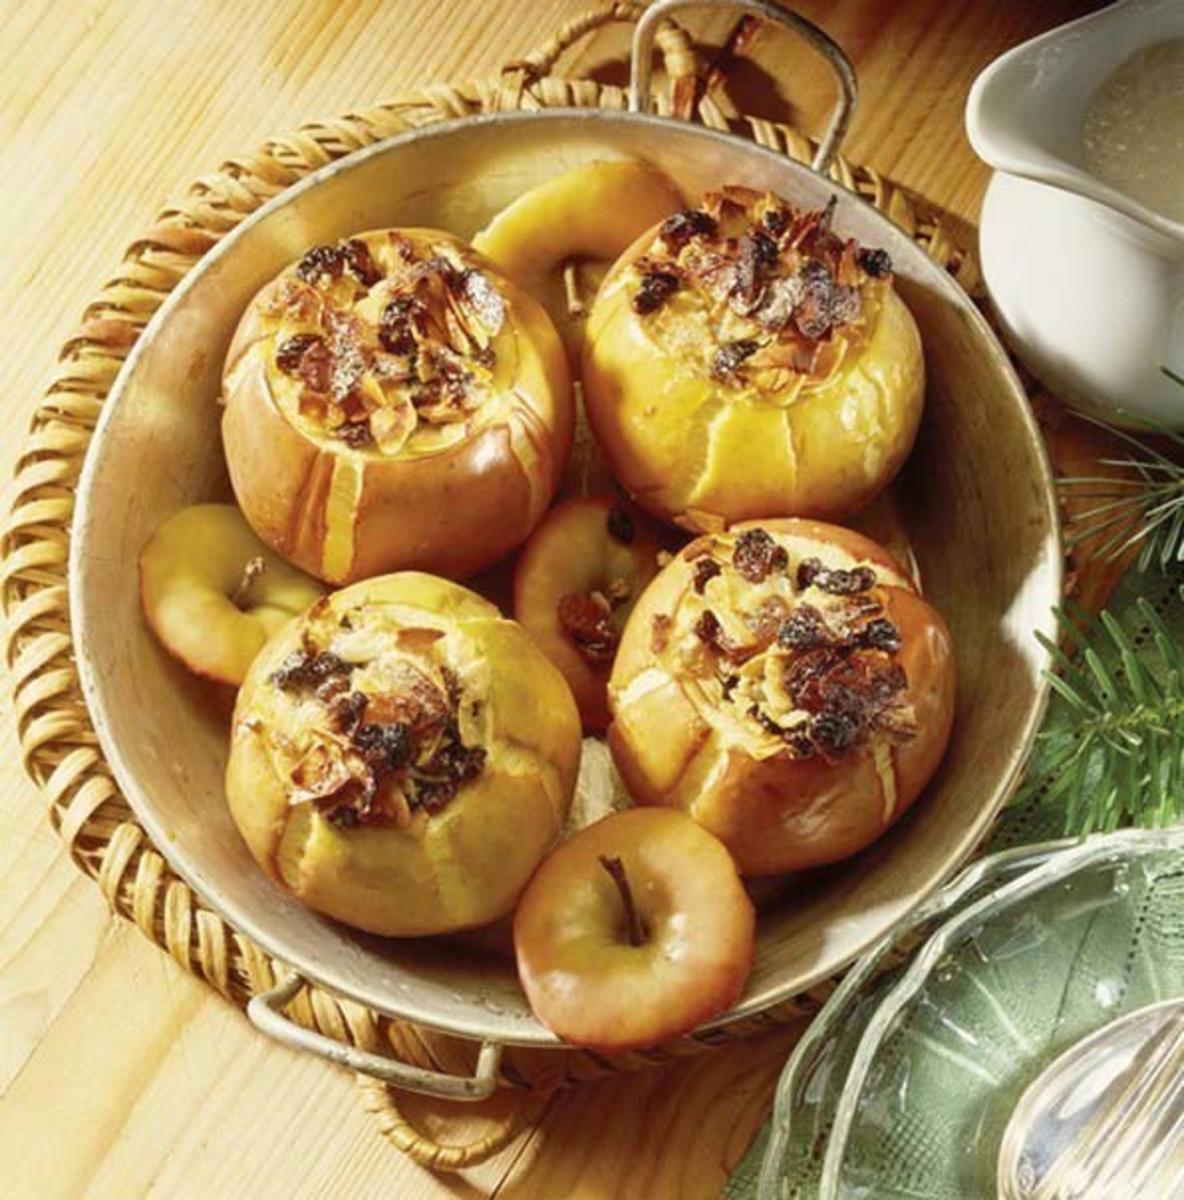 Рецепты печеного с медом. Ялокизапеченыевдуховке. Запеченные яблоки. Печёные яблоки в духовке с мёдом. Запеченные яблоки с орехами.